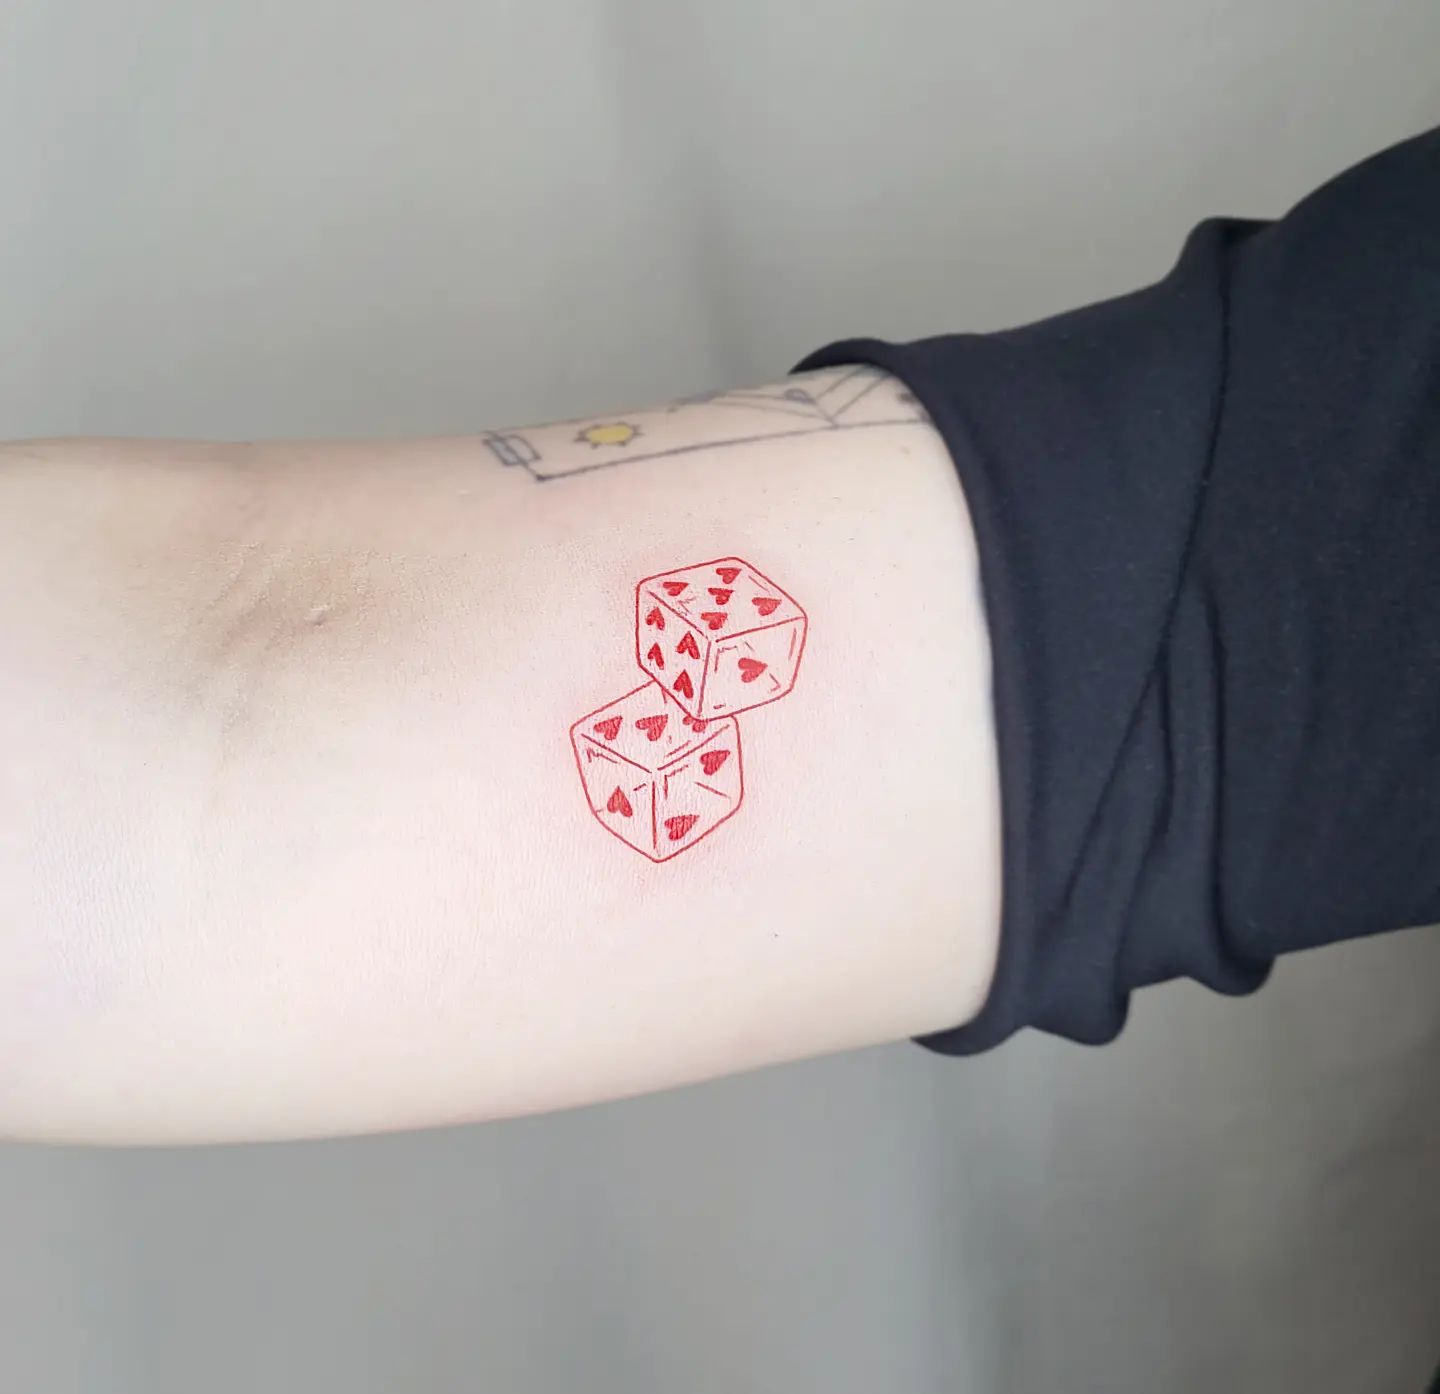 Diseño de tatuaje de dados rojos